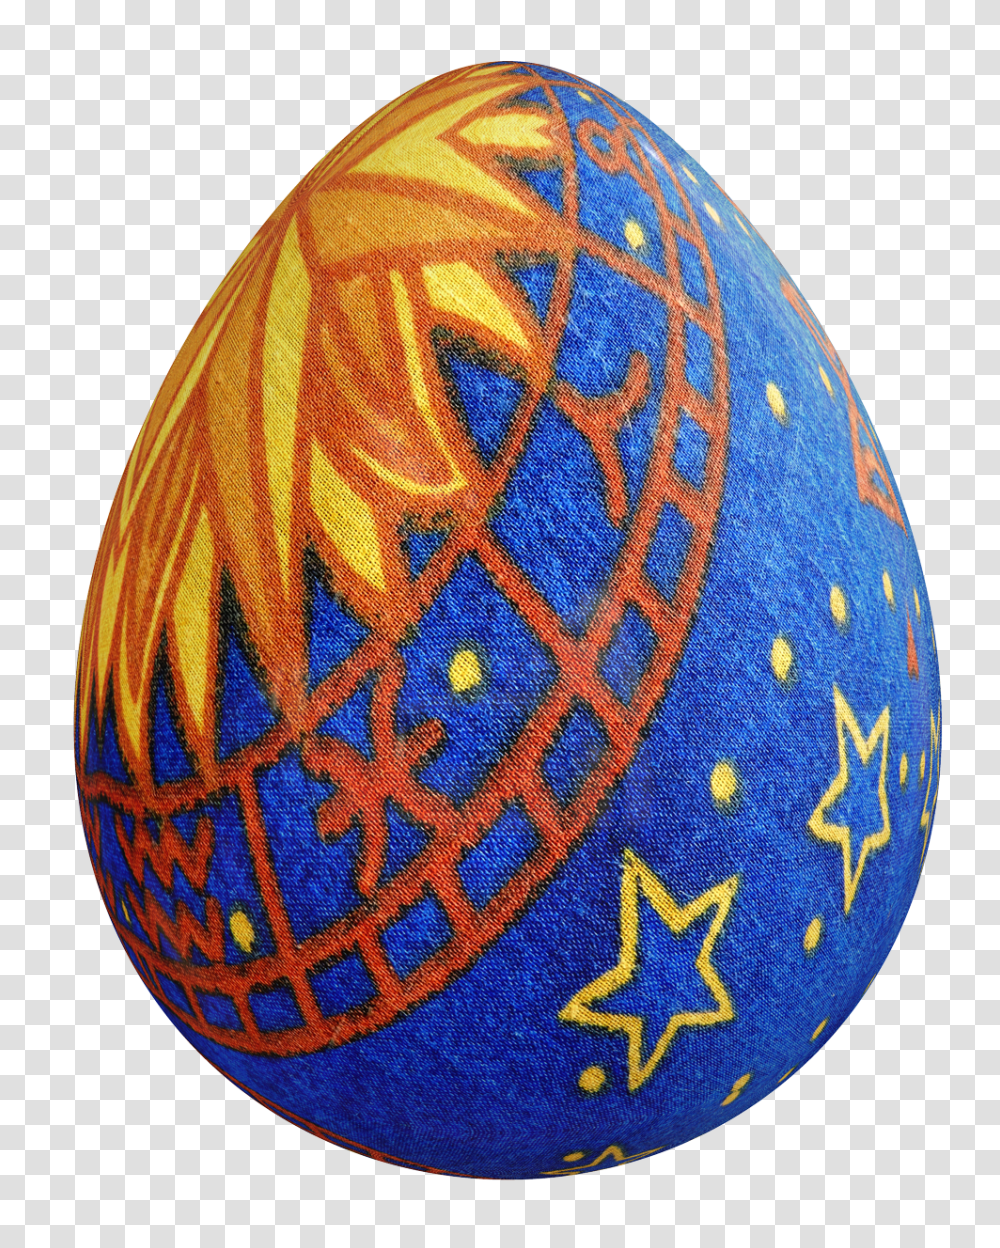 Easter Egg Image, Religion, Food, Baseball Cap, Hat Transparent Png